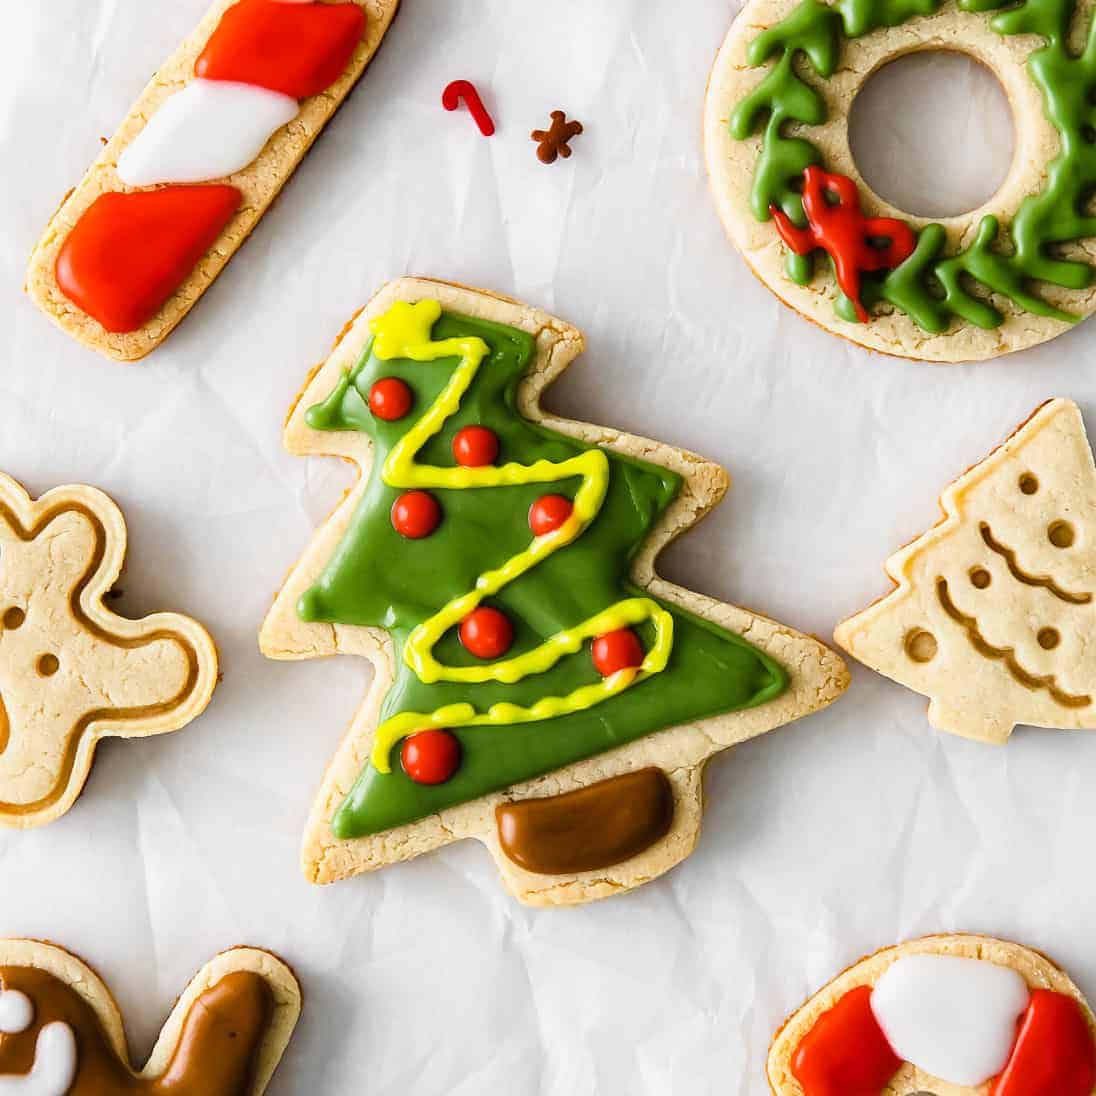 Sugarless, Sugar-Free and Low Sugar Treats for Healthy Christmas